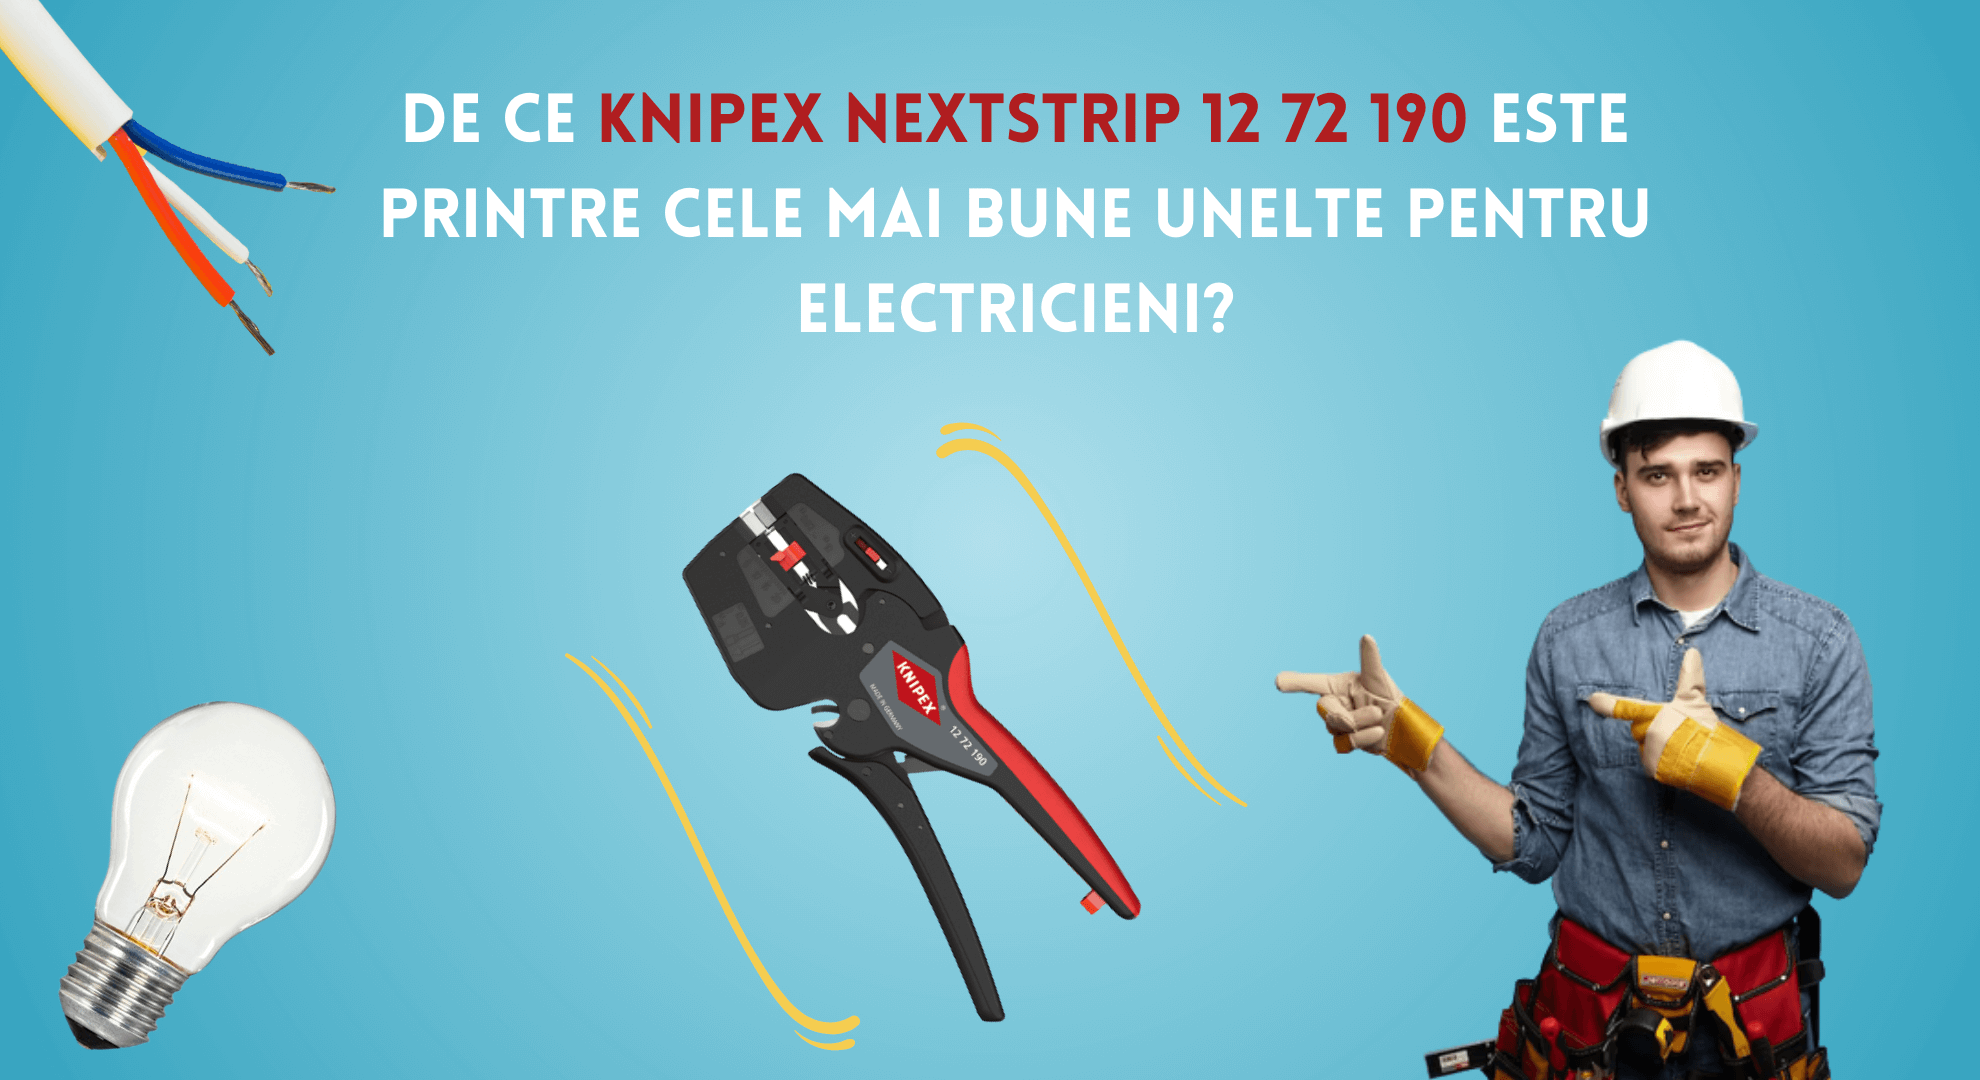 De ce Knipex NextStrip 12 72 190 este una dintre cele mai bune unelte pentru electricieni?